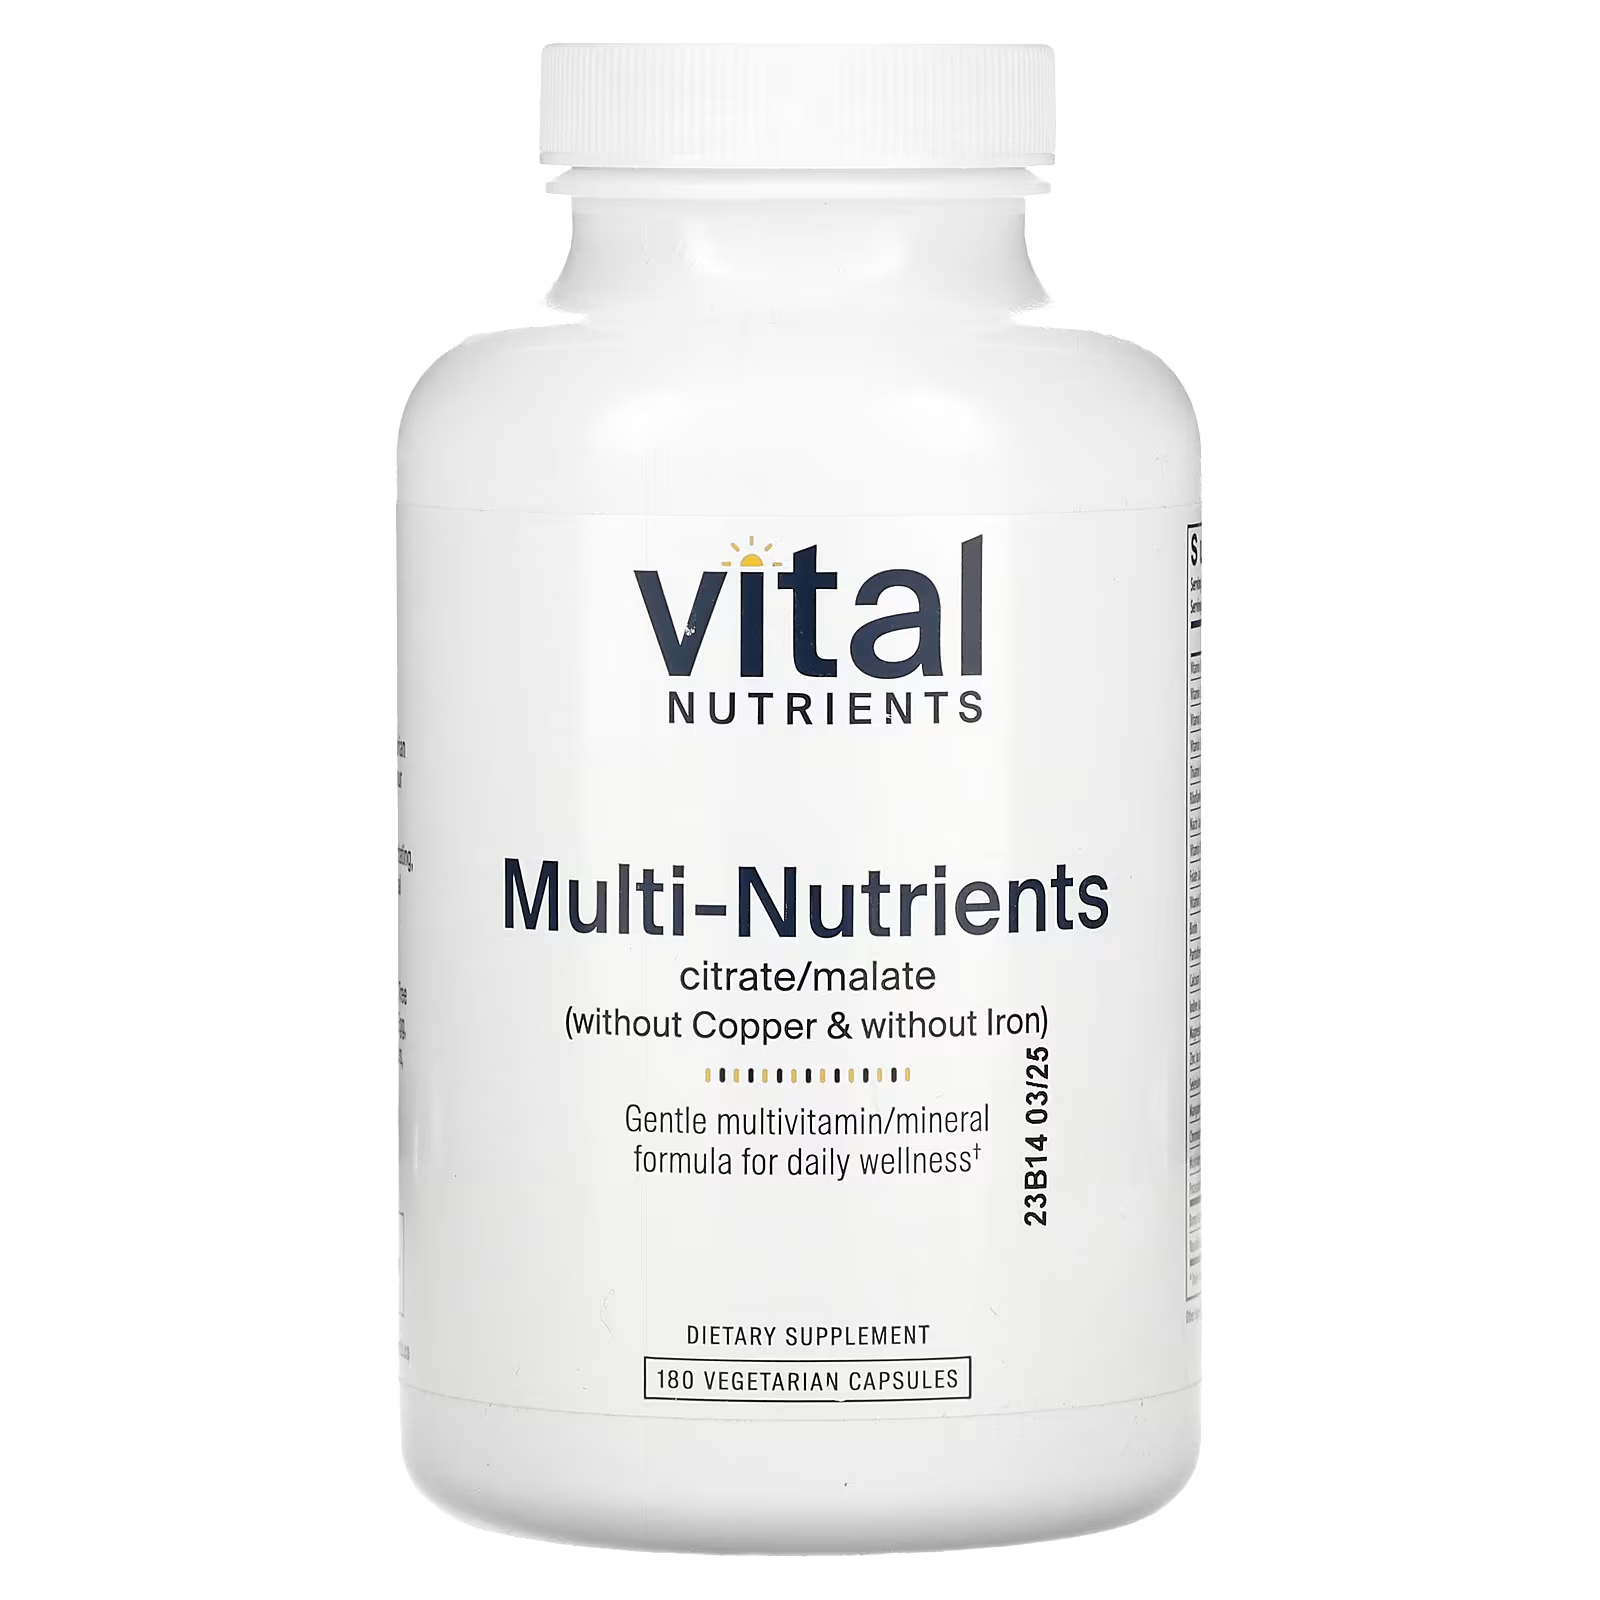 Мультивитамины без меди и железа Vital Nutrients Multi-Nutrients Citrate/Malate, 180 капсул витамины антиоксиданты минералы эвалар мультивитамины мармеладные ягоды